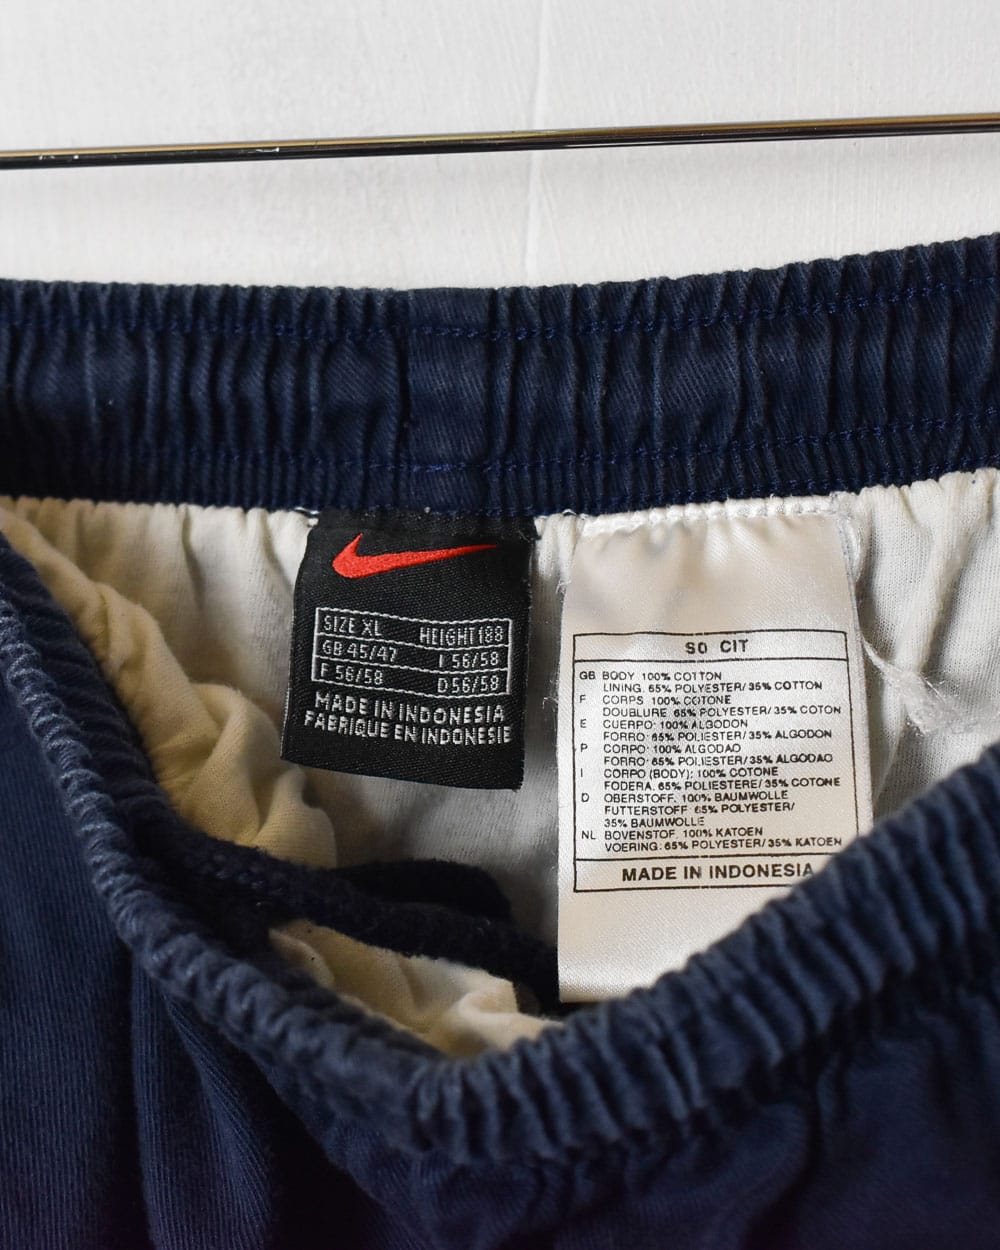 Navy Nike Shorts - X-Large